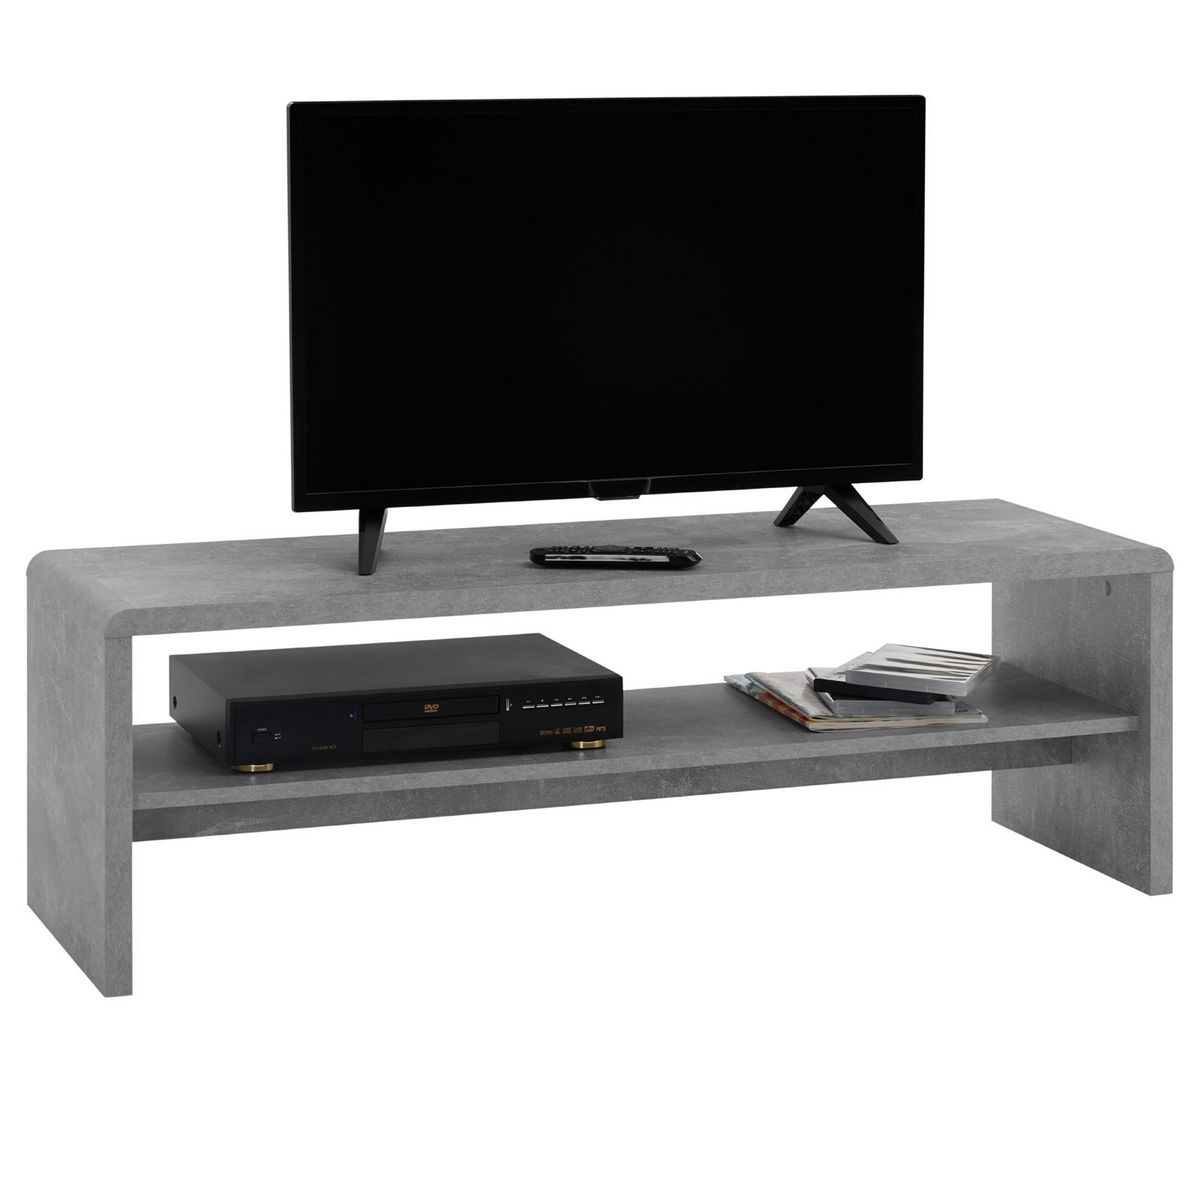 IDIMEX Table basse NOELLE, table de salon rectangulaire ou meuble TV de 120 cm avec 1 étagère de rangement, en mélaminé décor béton